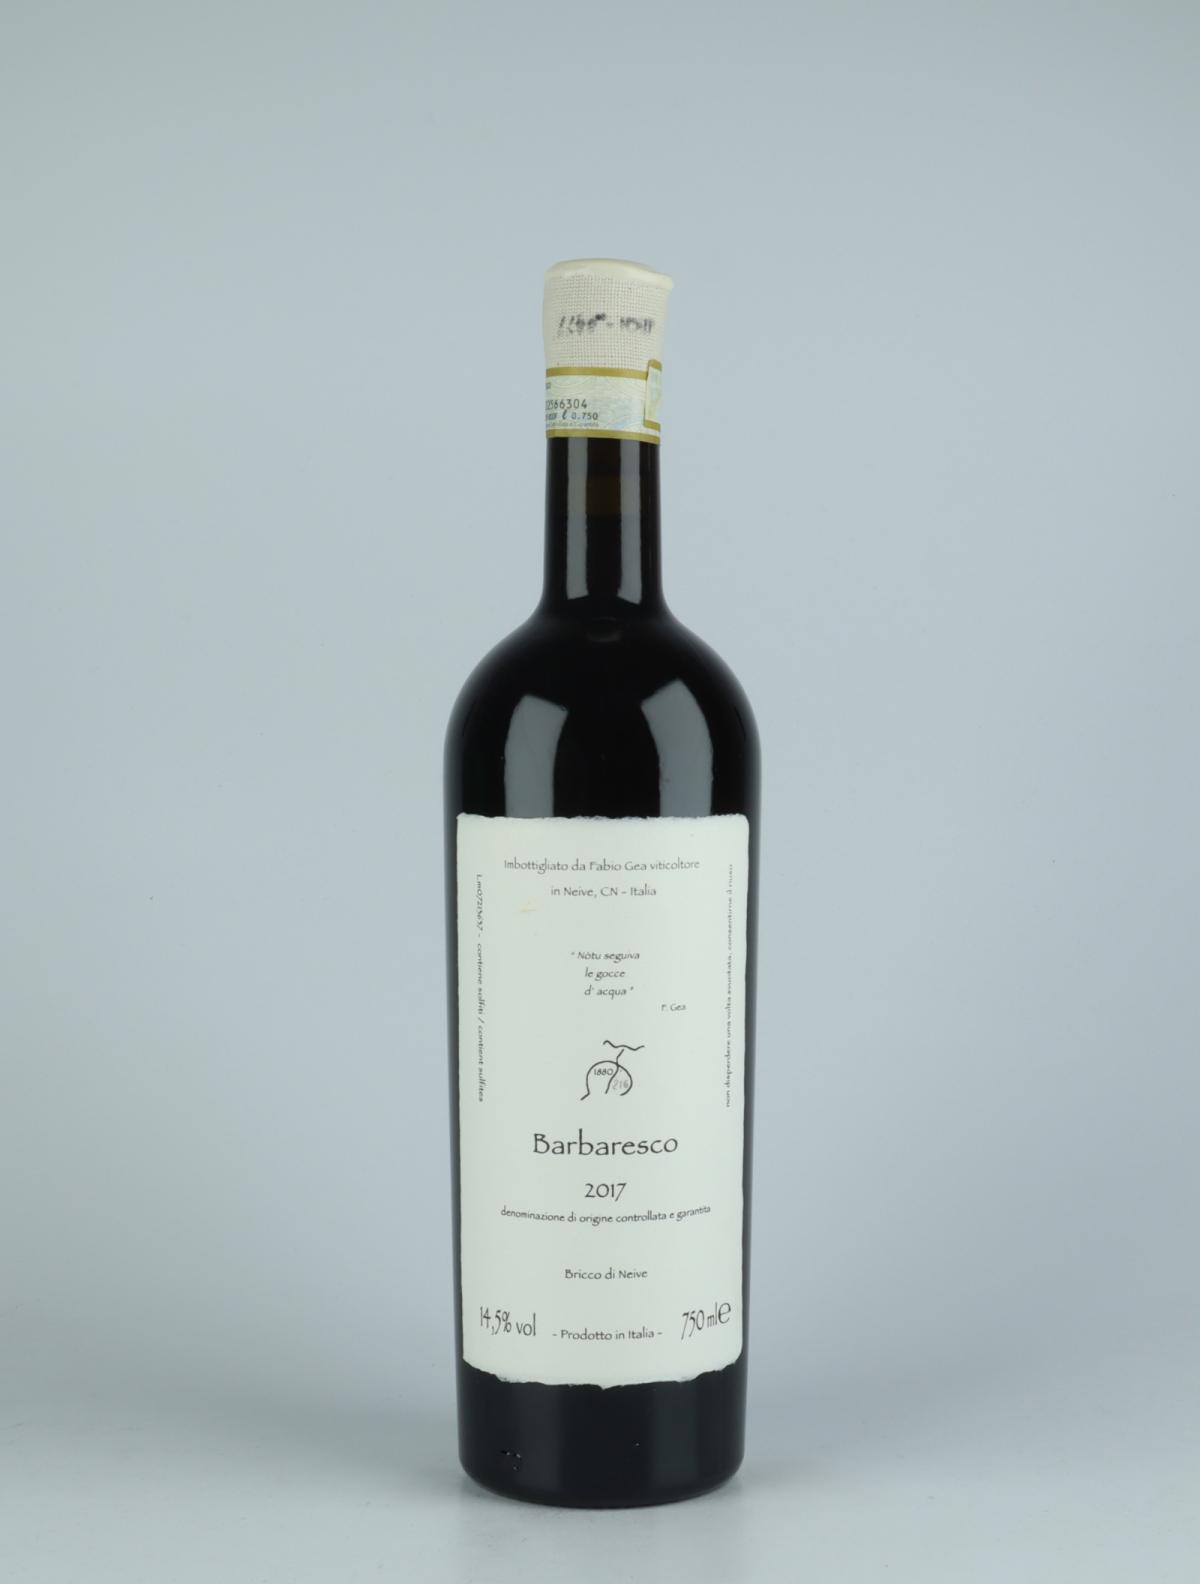 A bottle 2017 Barbaresco Red wine from Fabio Gea, Piedmont in Italy